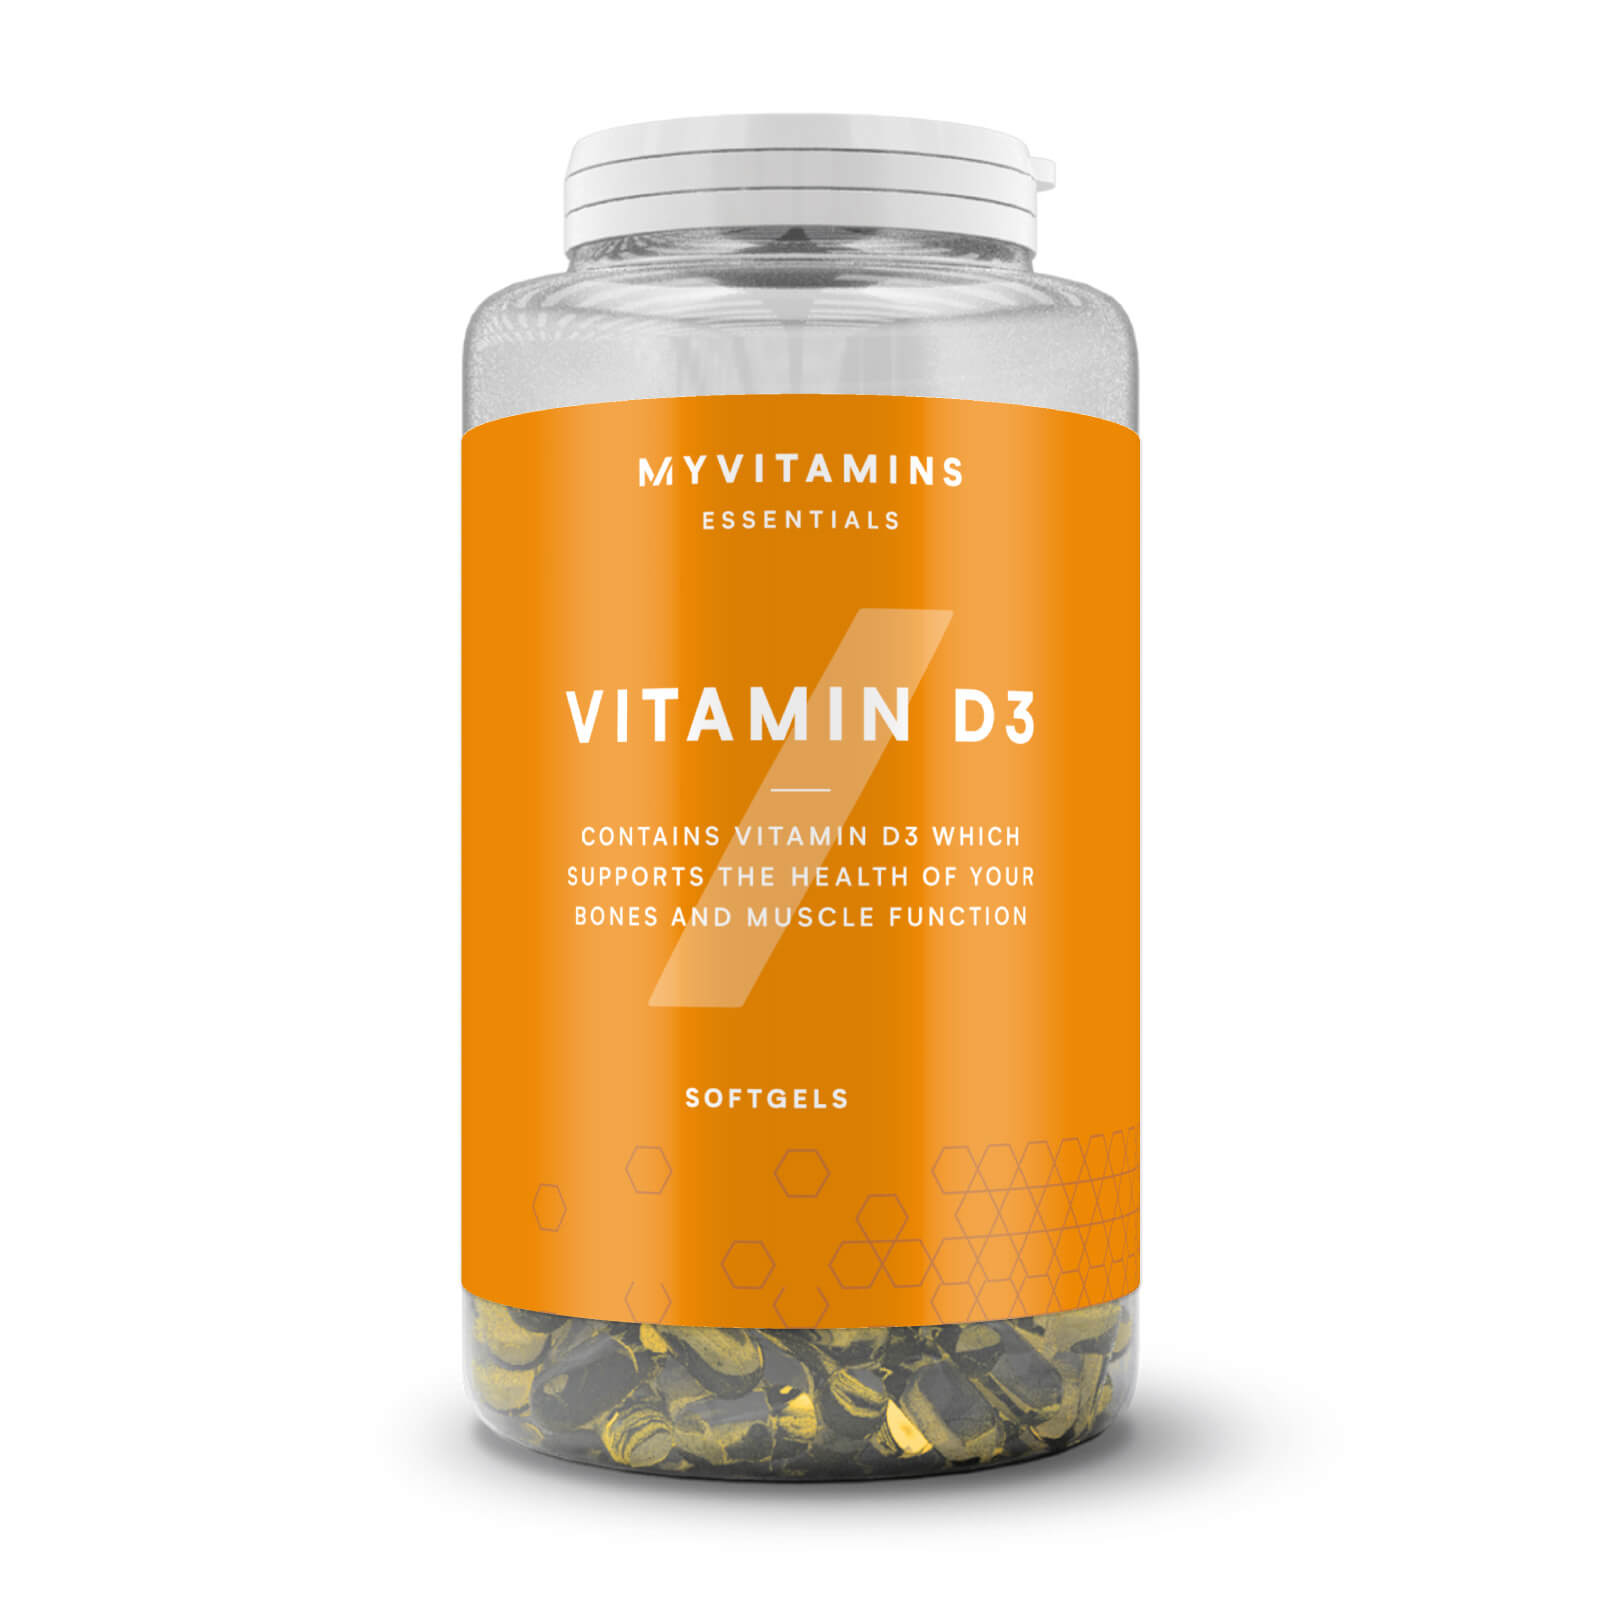 Vitamina D3 em Cápsulas - 180softgels - Non-Vegan